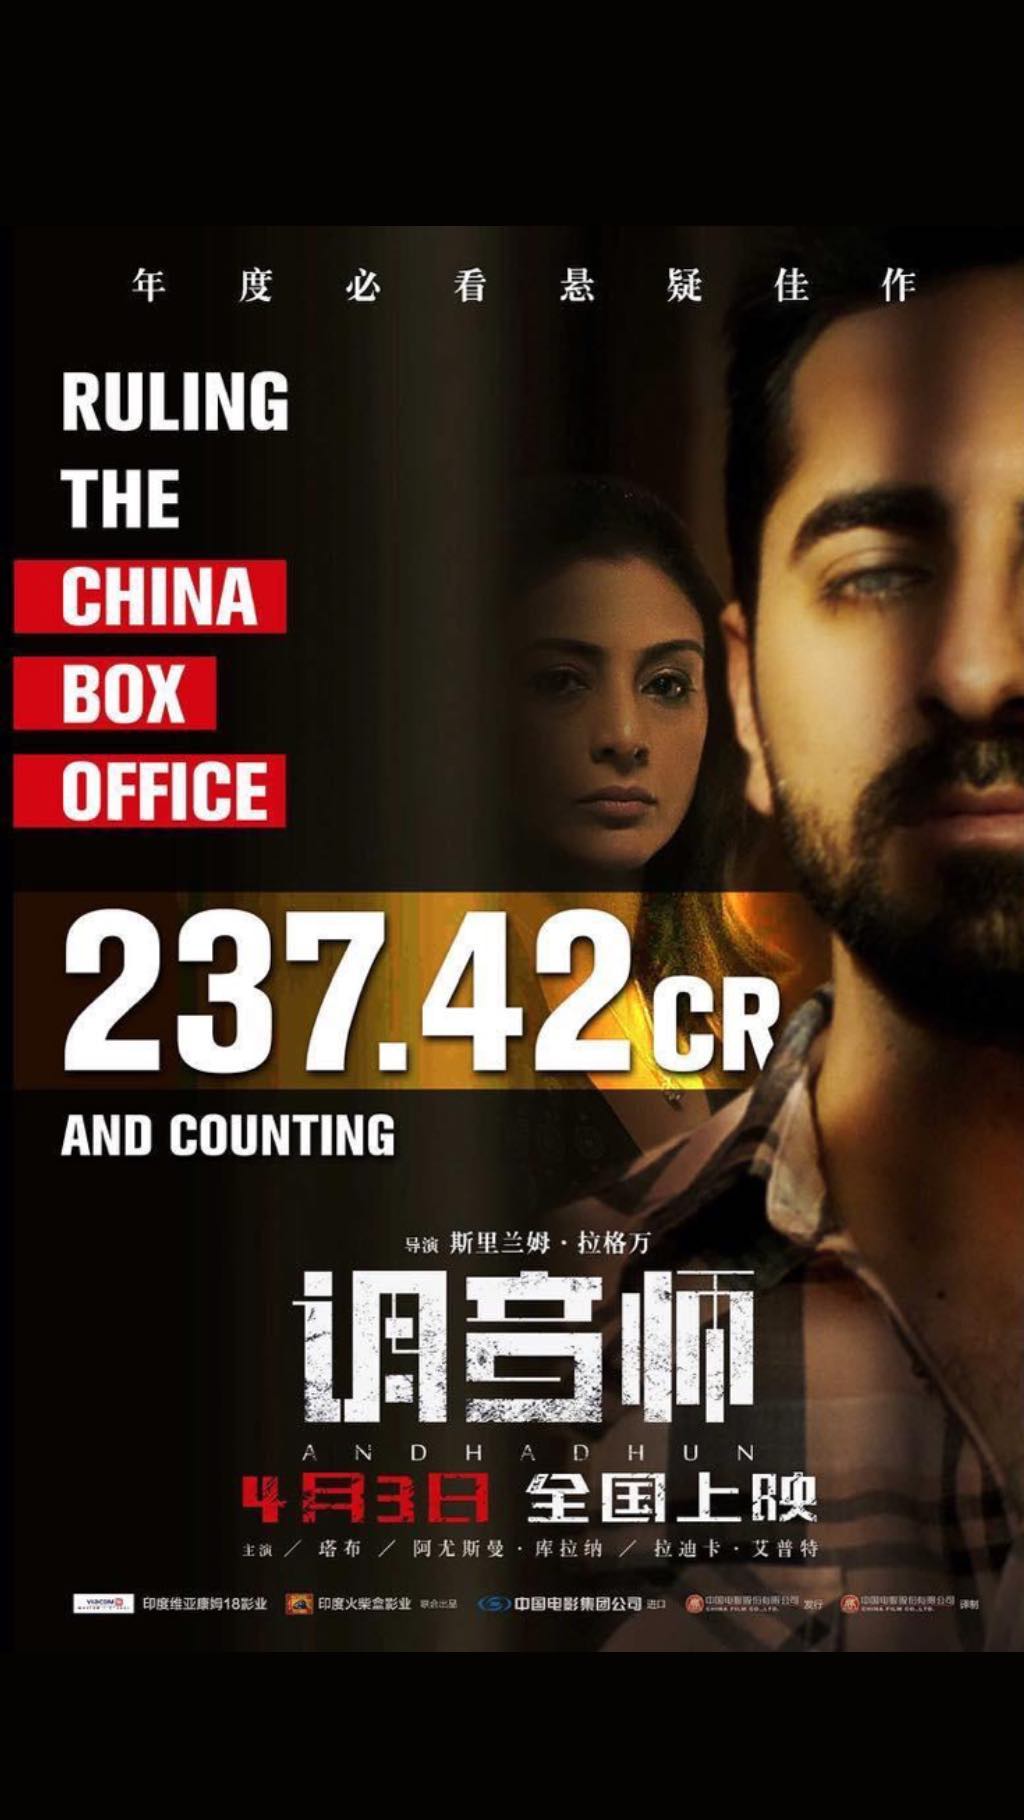 AndhaDhun China Box Office: Ayushmann Khurrana, Radhika Apte, Tabu